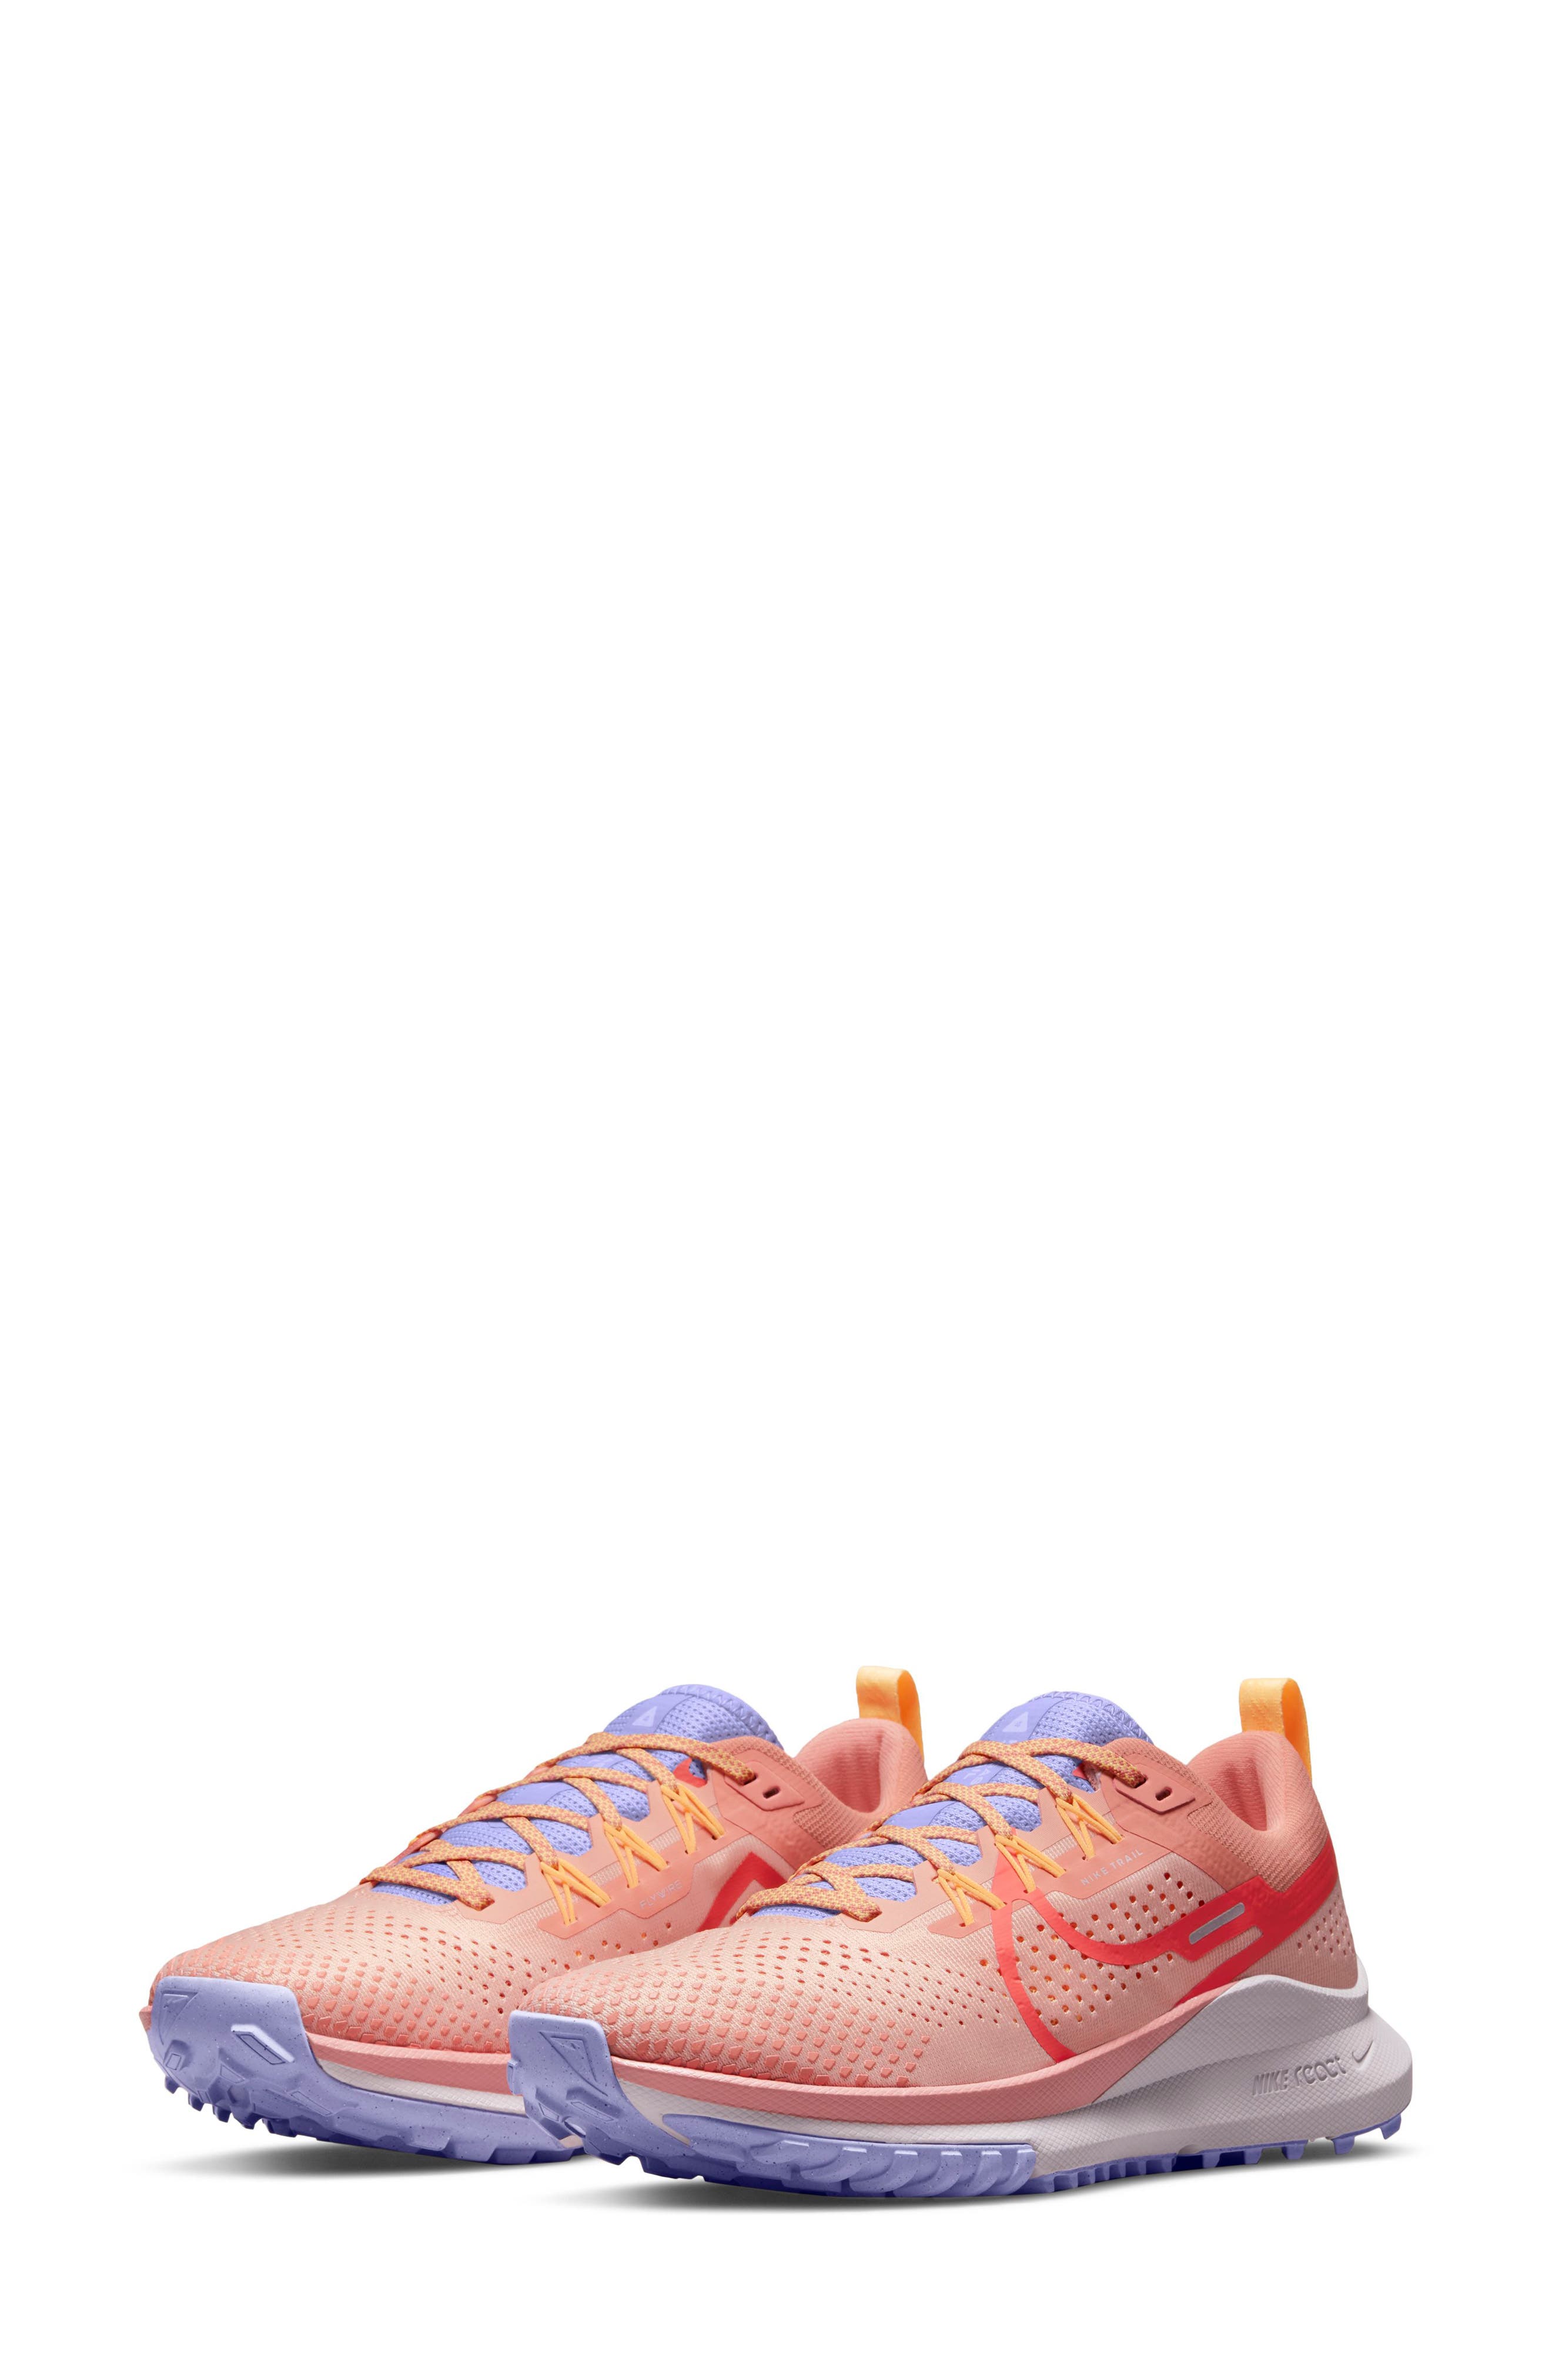 nike orange pink sneakers